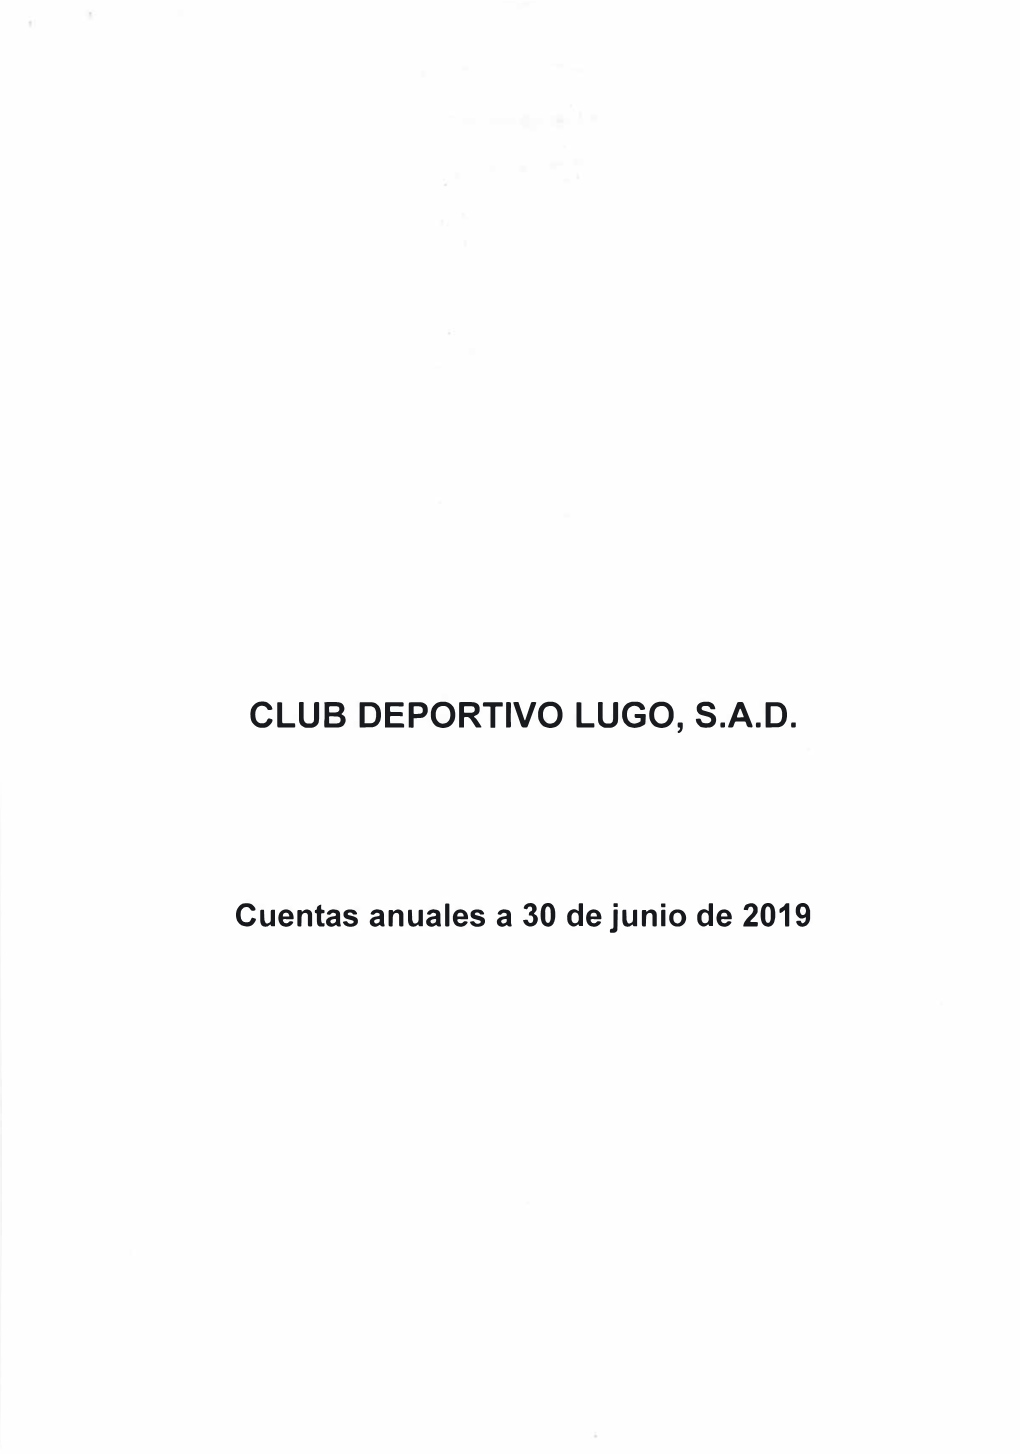 Club Deportivo Lugo, S.A.D